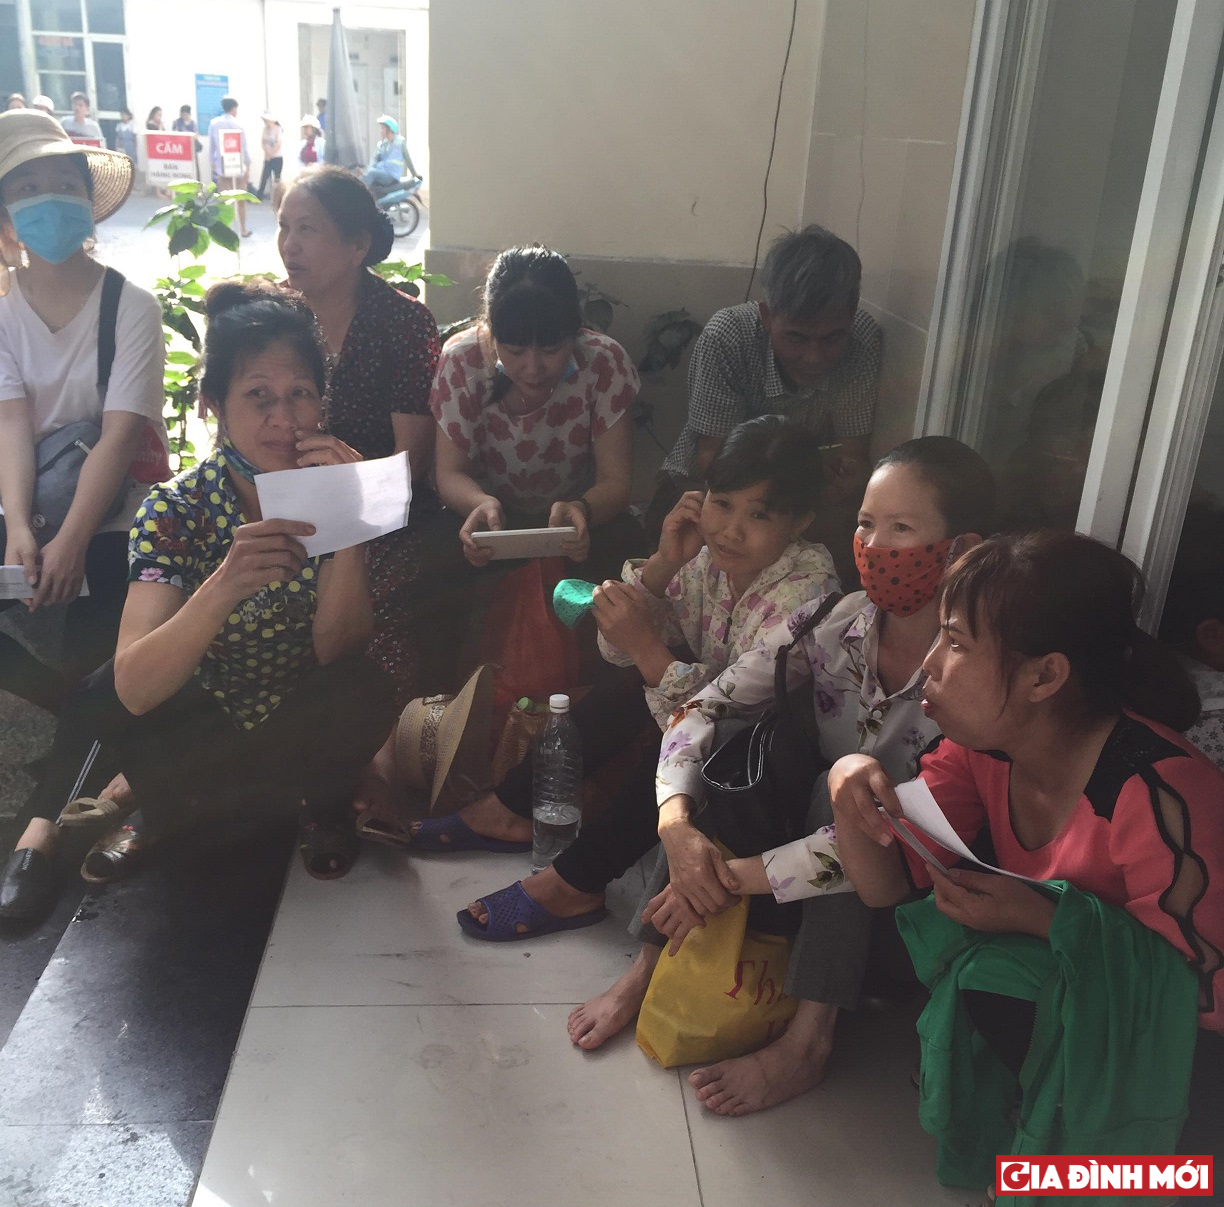 Người dân ngồi bệt ngoài hành lang tránh nắng và chờ đến lượt thăm khám